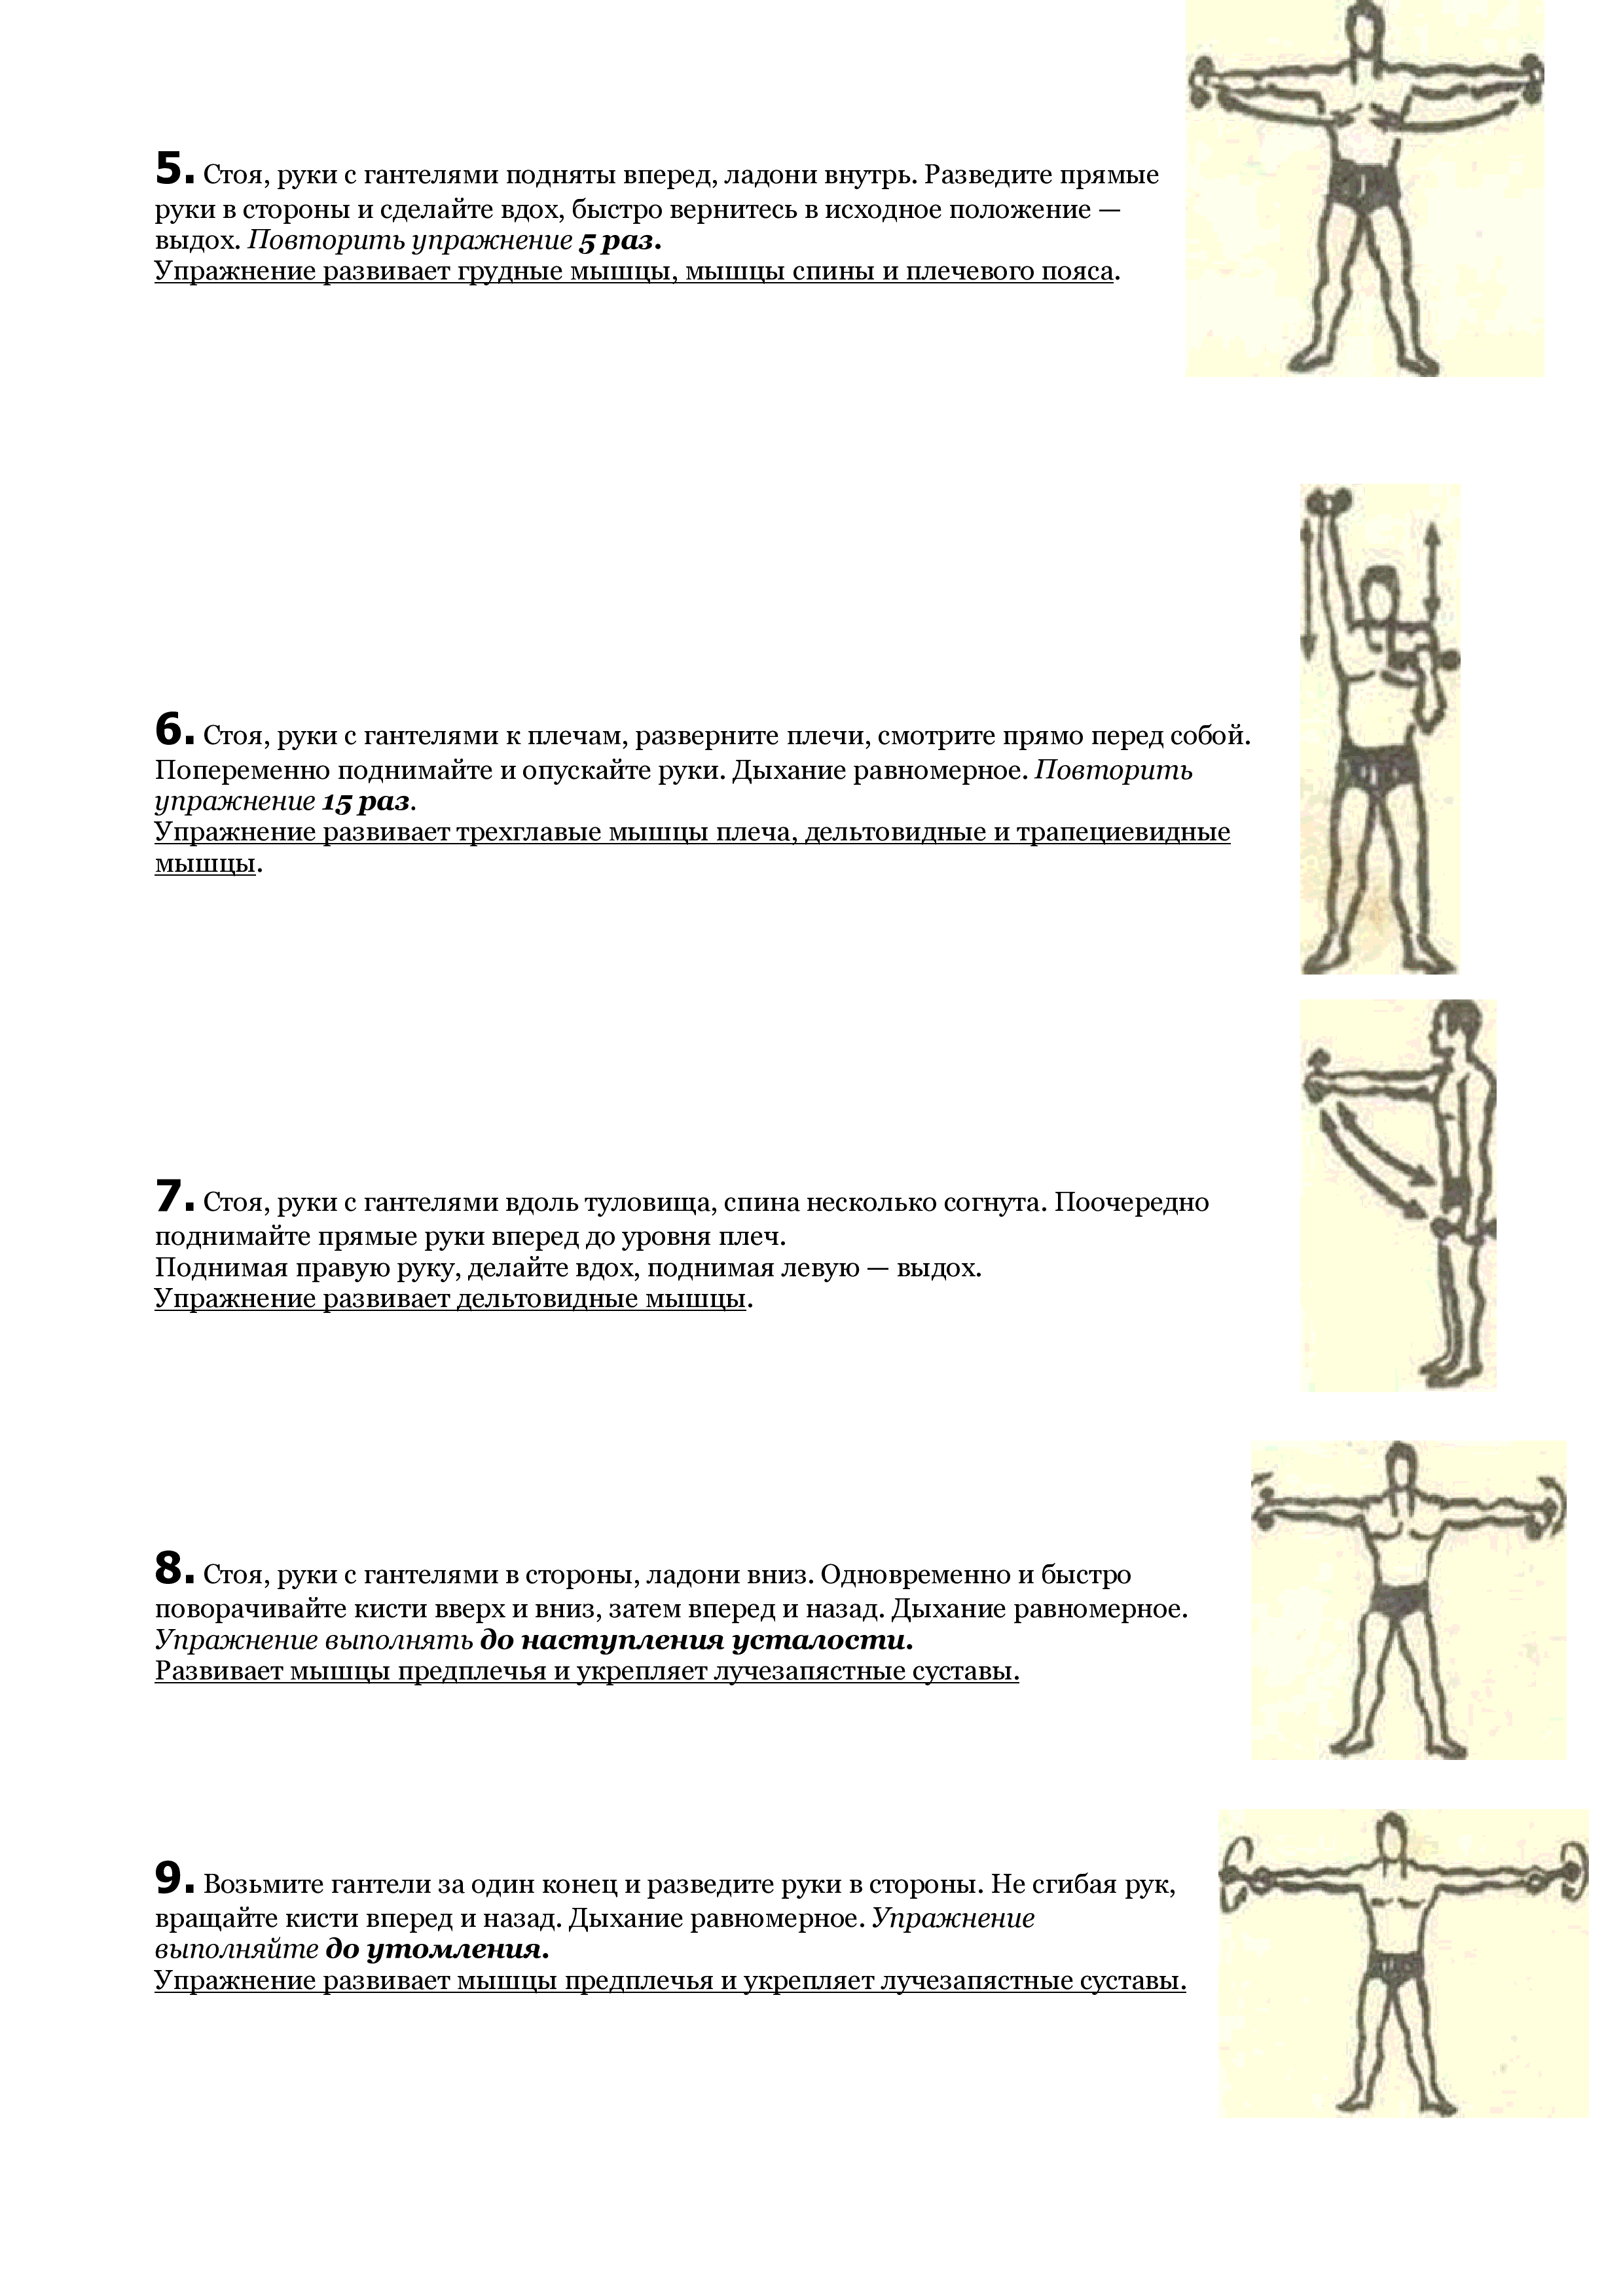 «сила и как сделаться сильным» (система физического развития евгения сандова). уникальная система изометрических упражнений железного самсона